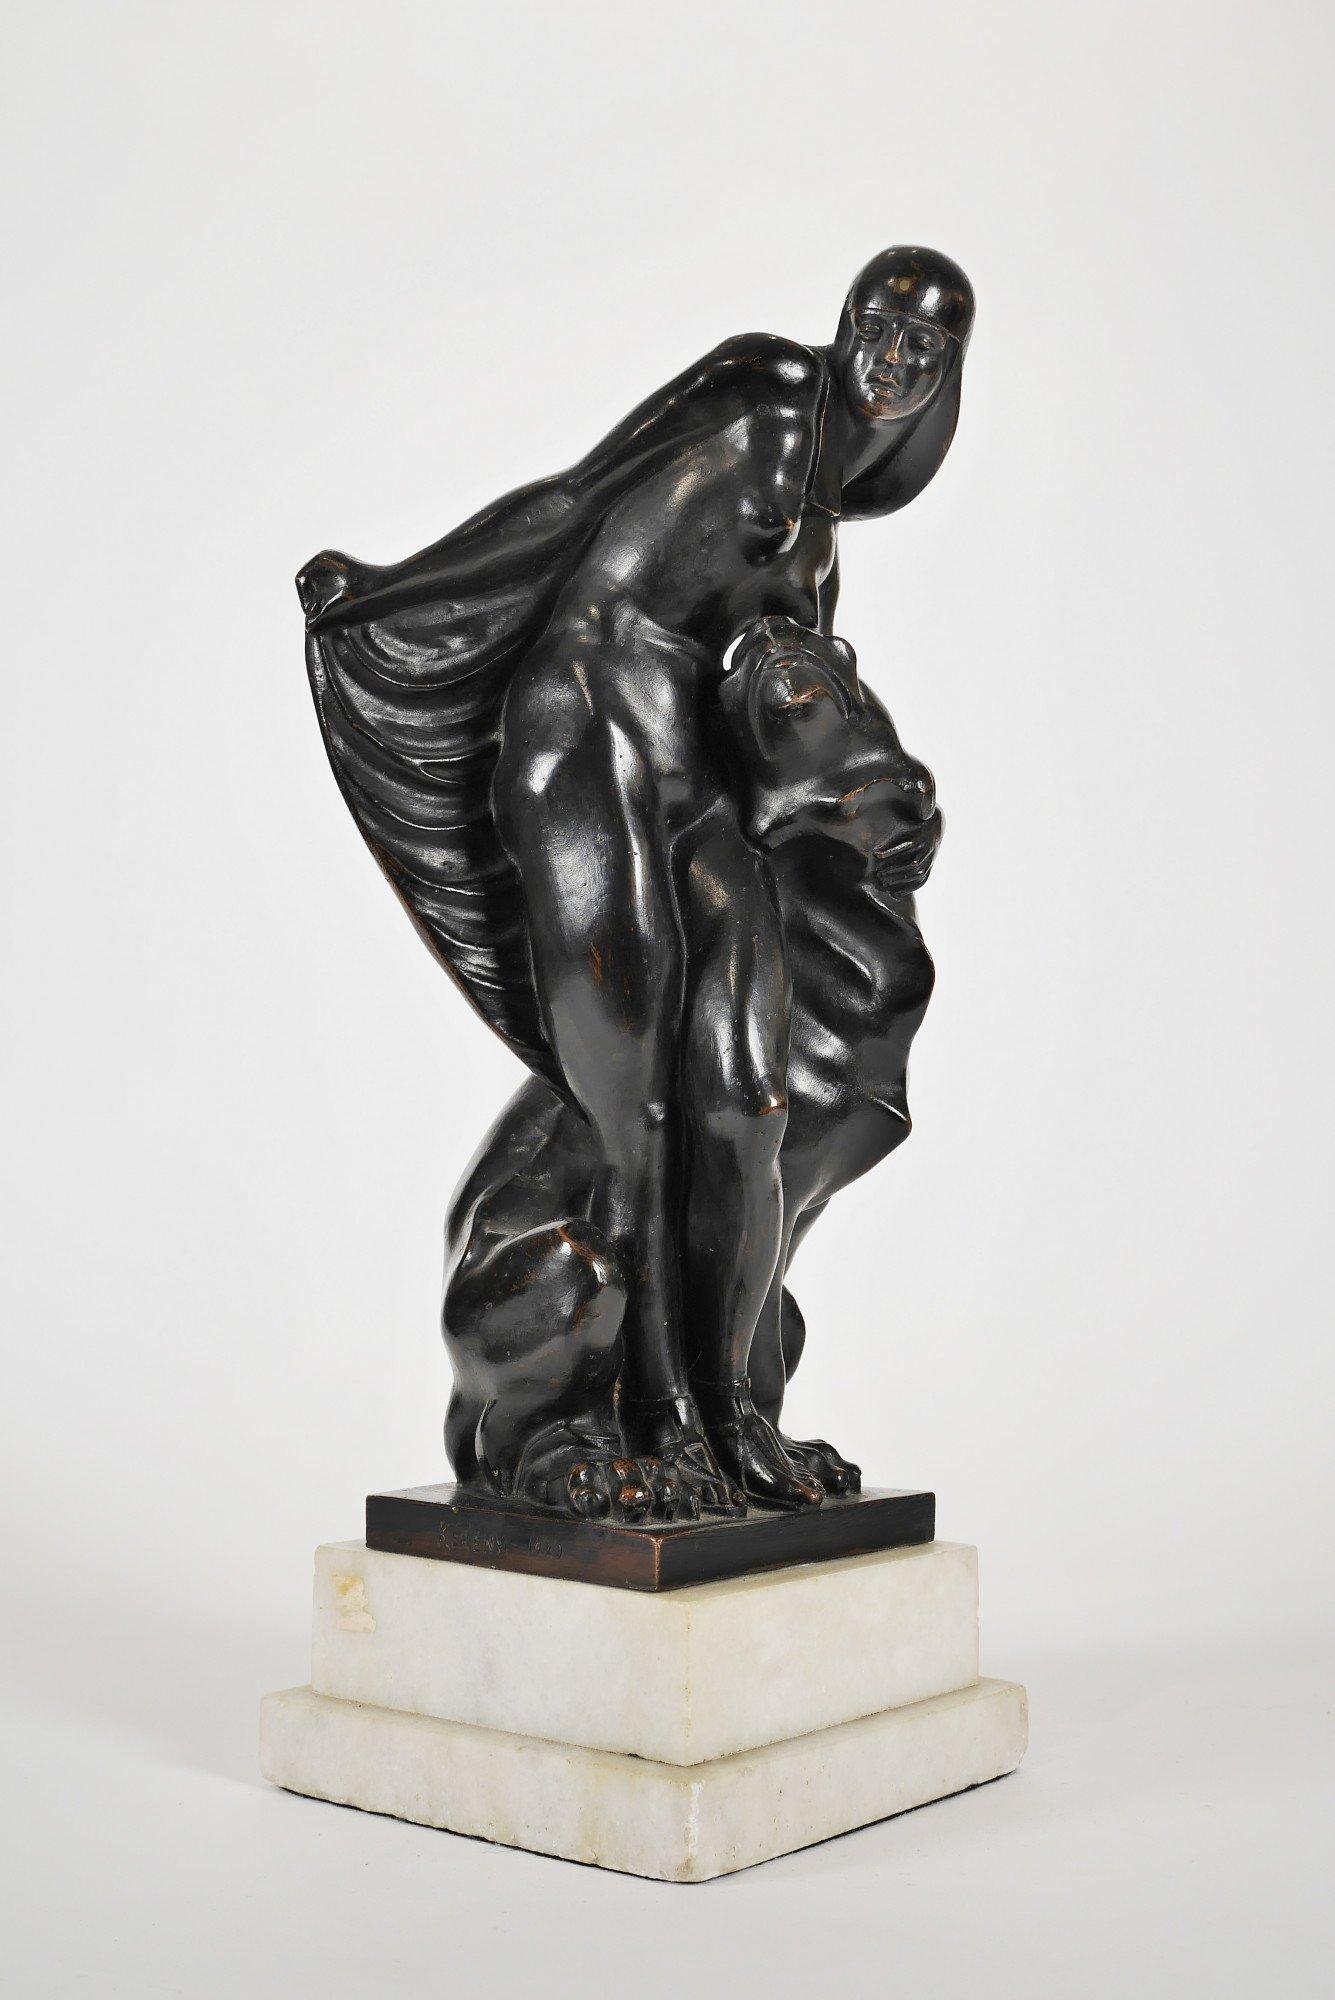 Figurative Sculpture Jenő Kerényi - Le lion Tamer, figure féminine européenne en bronze du 20e siècle, artiste hongroise